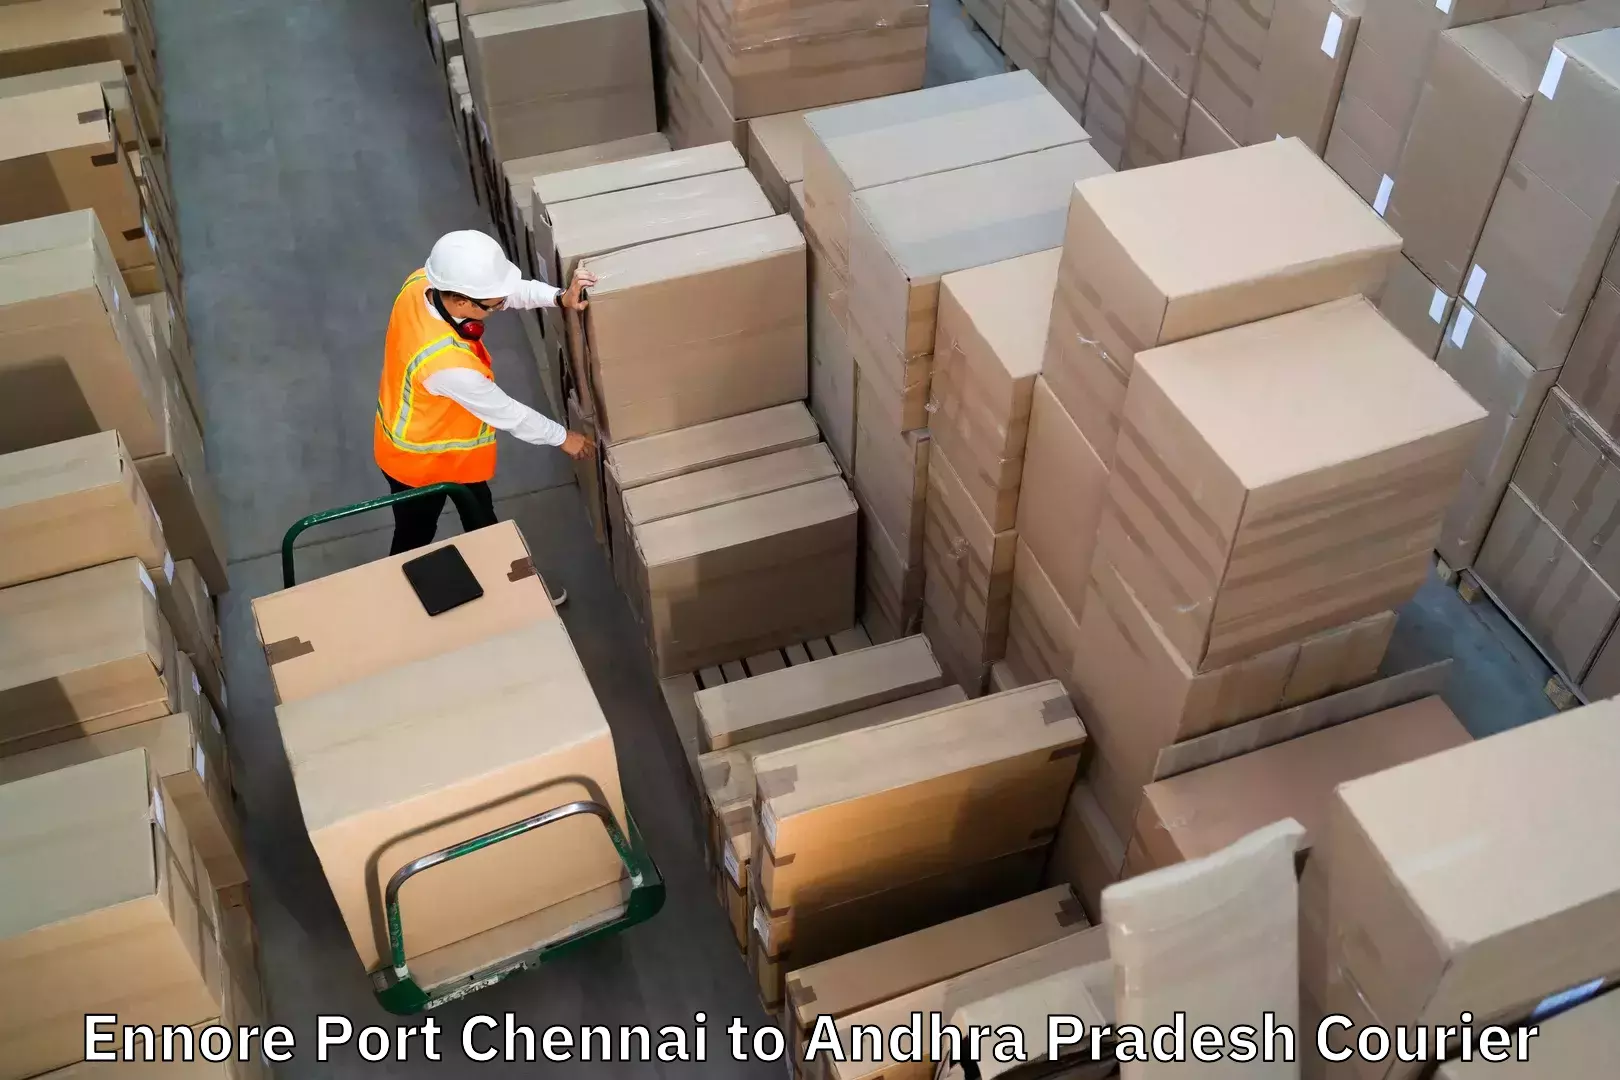 Luggage transport service Ennore Port Chennai to Tadikalapudi